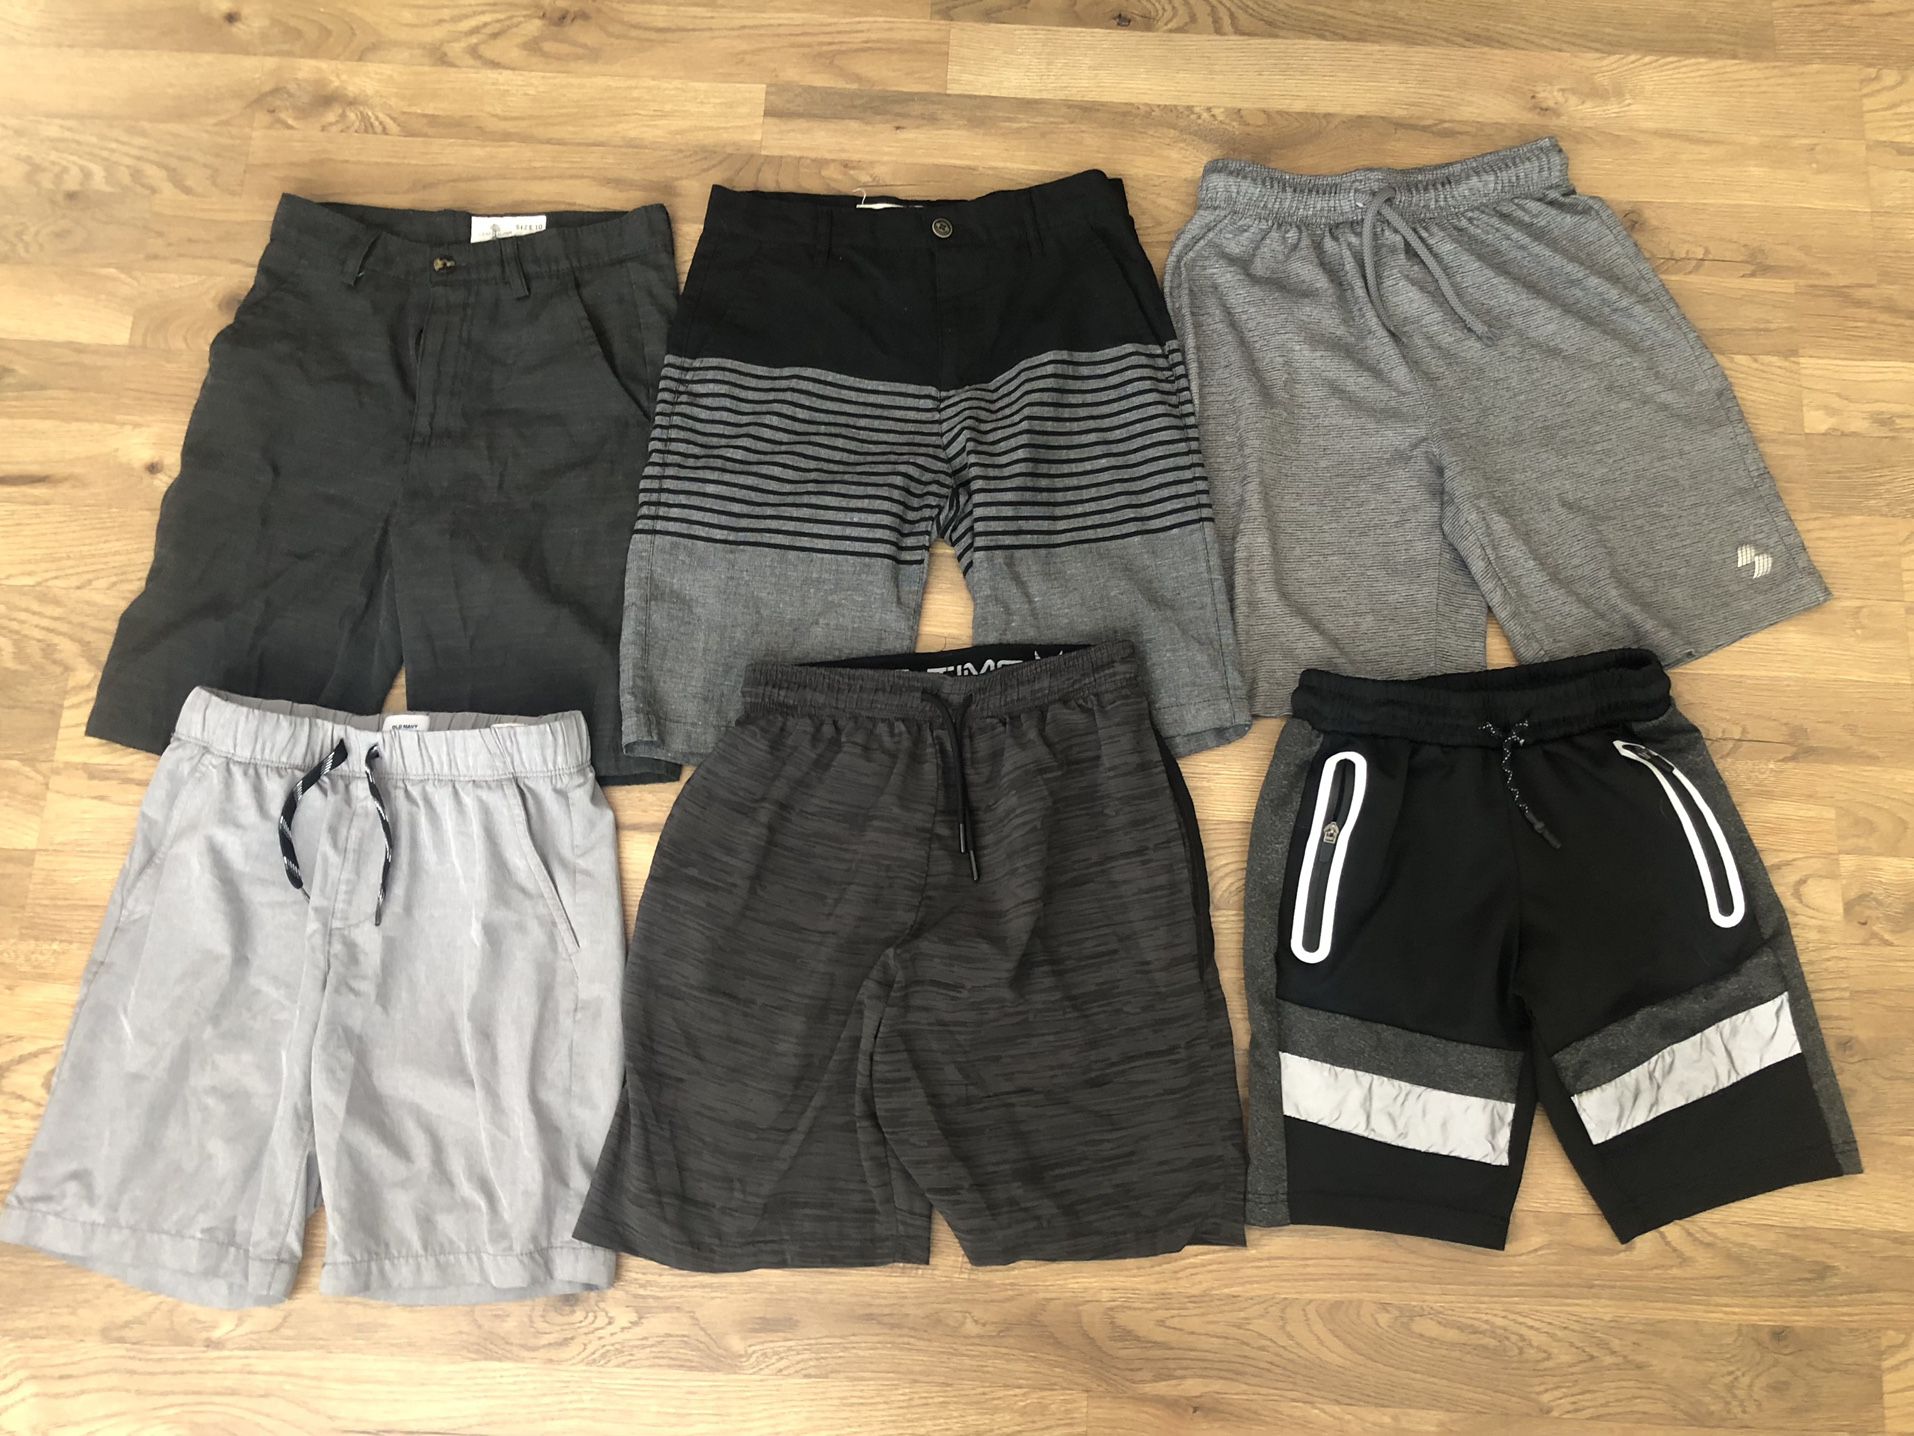 Boys Size 10-12 Clothing